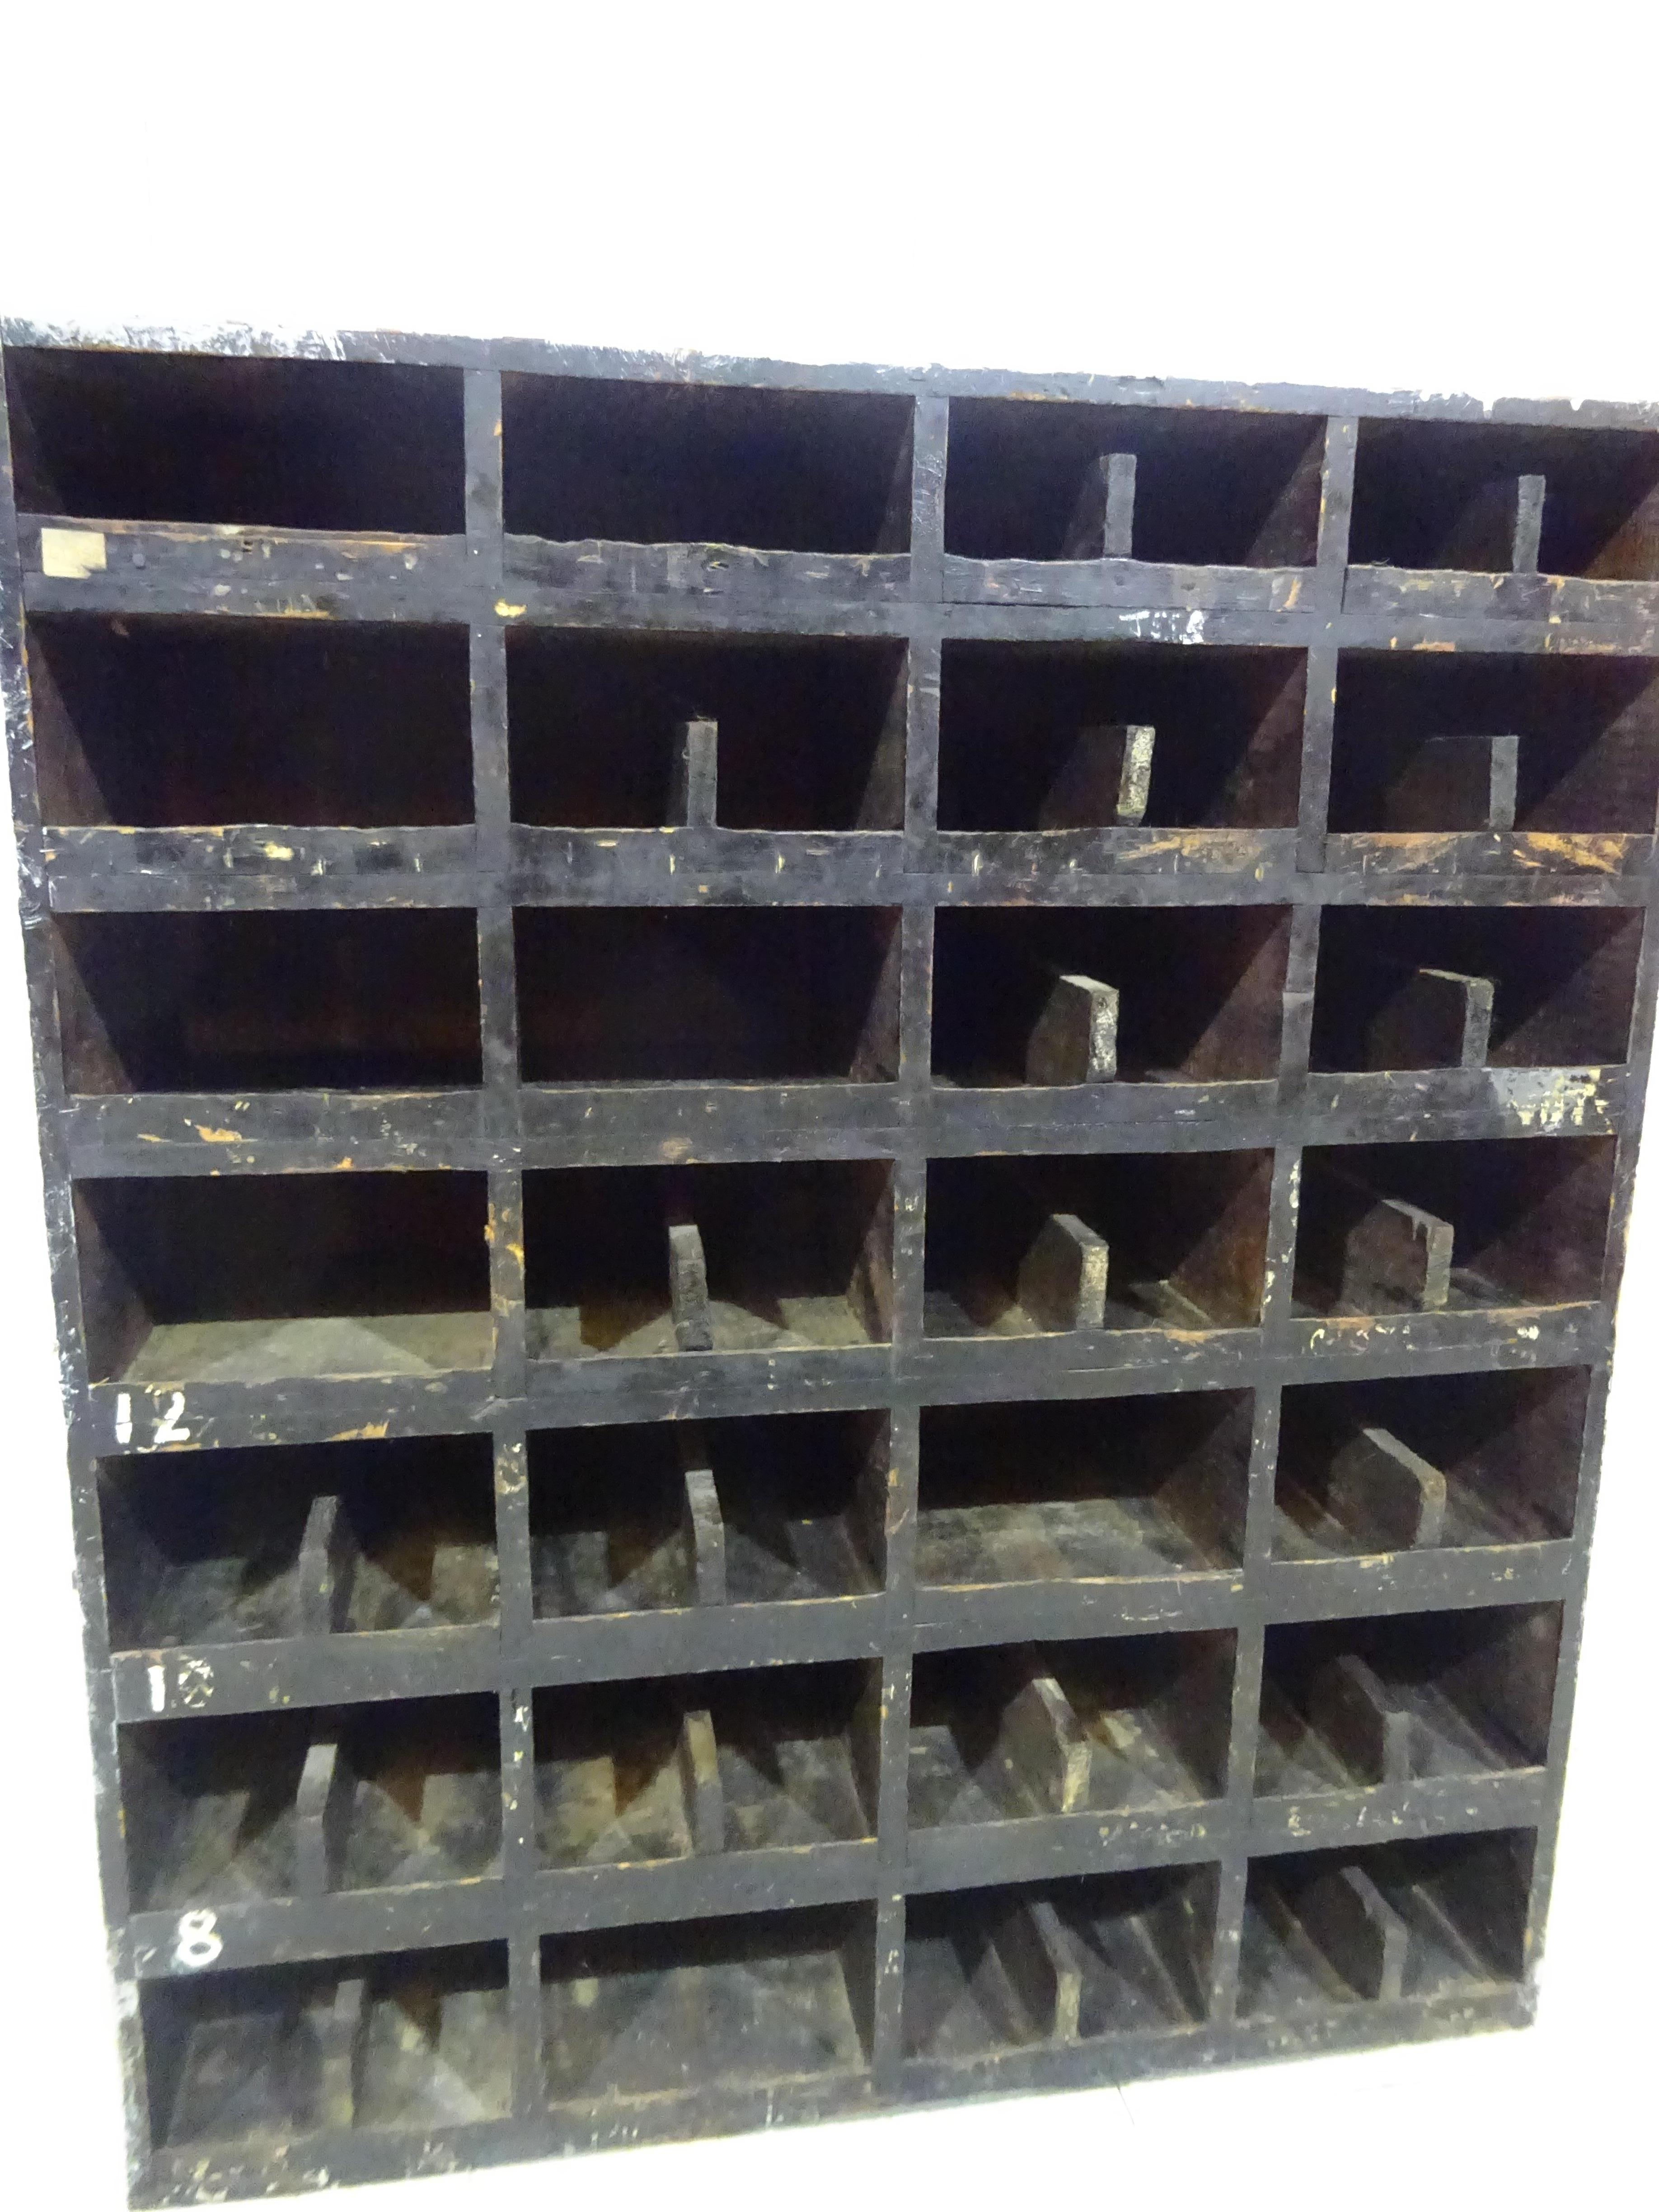 Pigeonnier industriel des années 1940 

Un bel objet idéal pour le stockage du vin ! 

Il s'agit d'une armoire à casiers pour ingénieurs datant des années 1940, utilisée à l'origine pour ranger les écrous et les boulons dans un